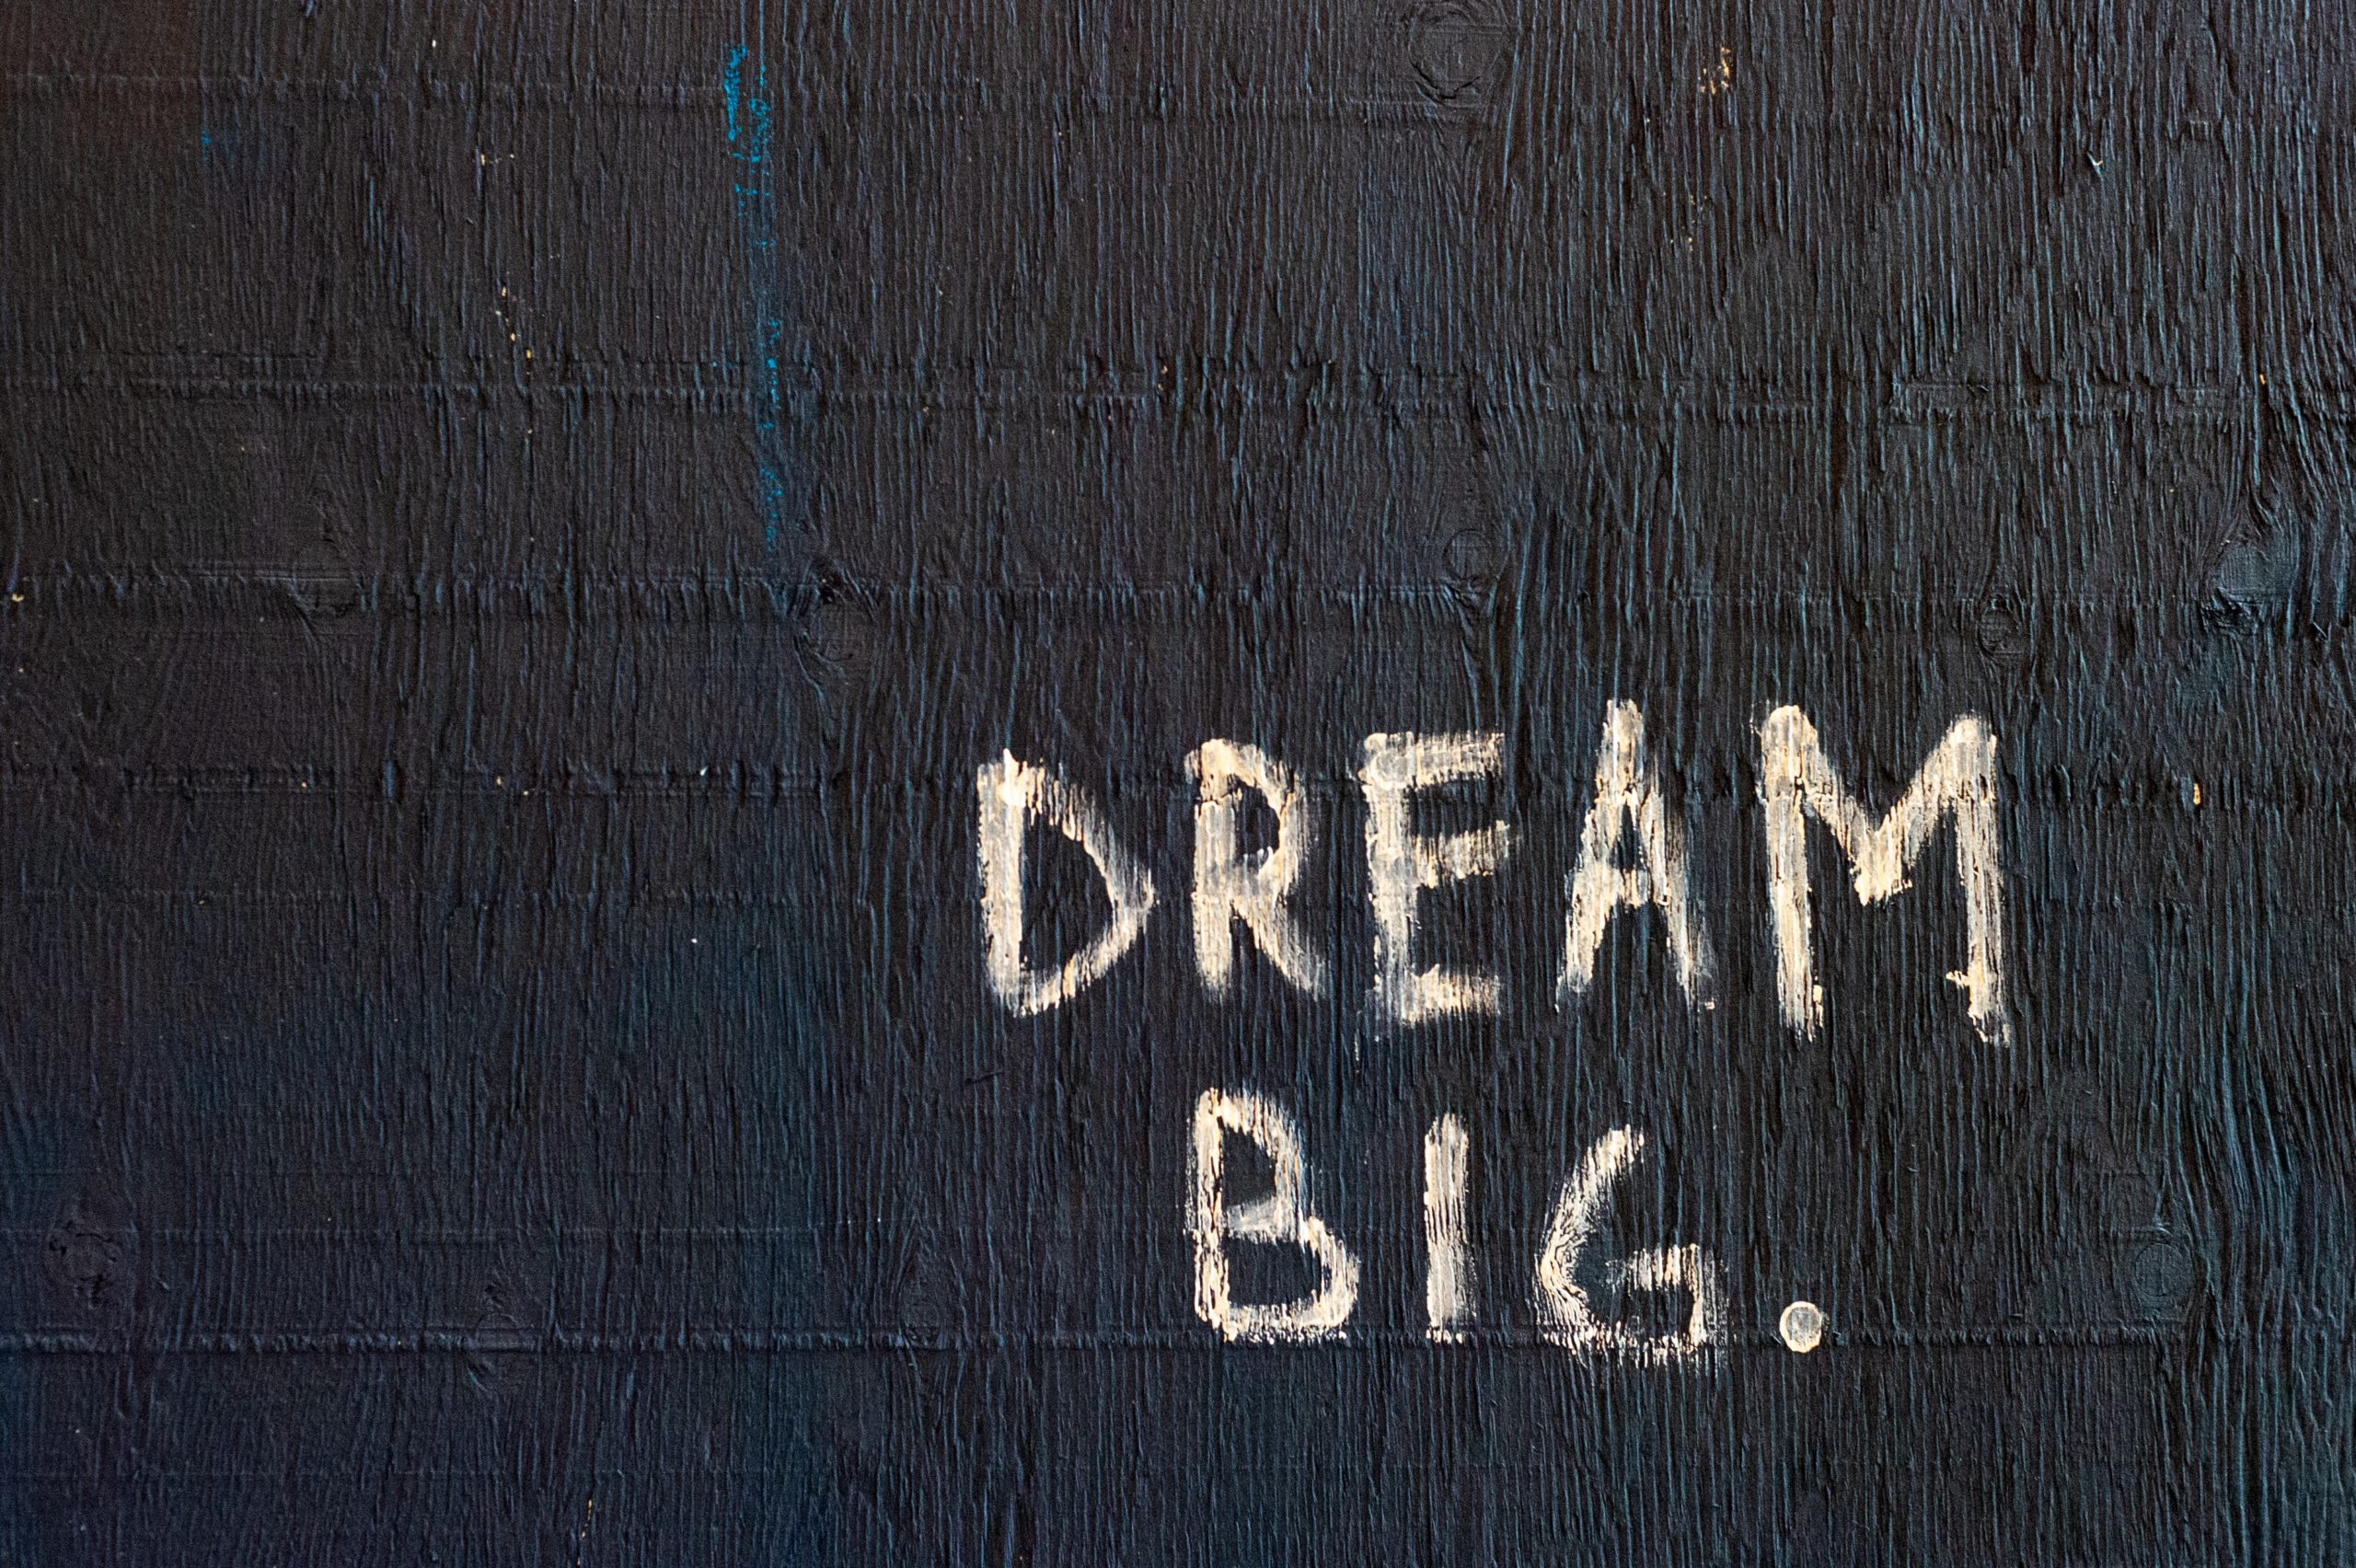 Ein schwarzer HIntergrund mit Aufschrift: Dream big